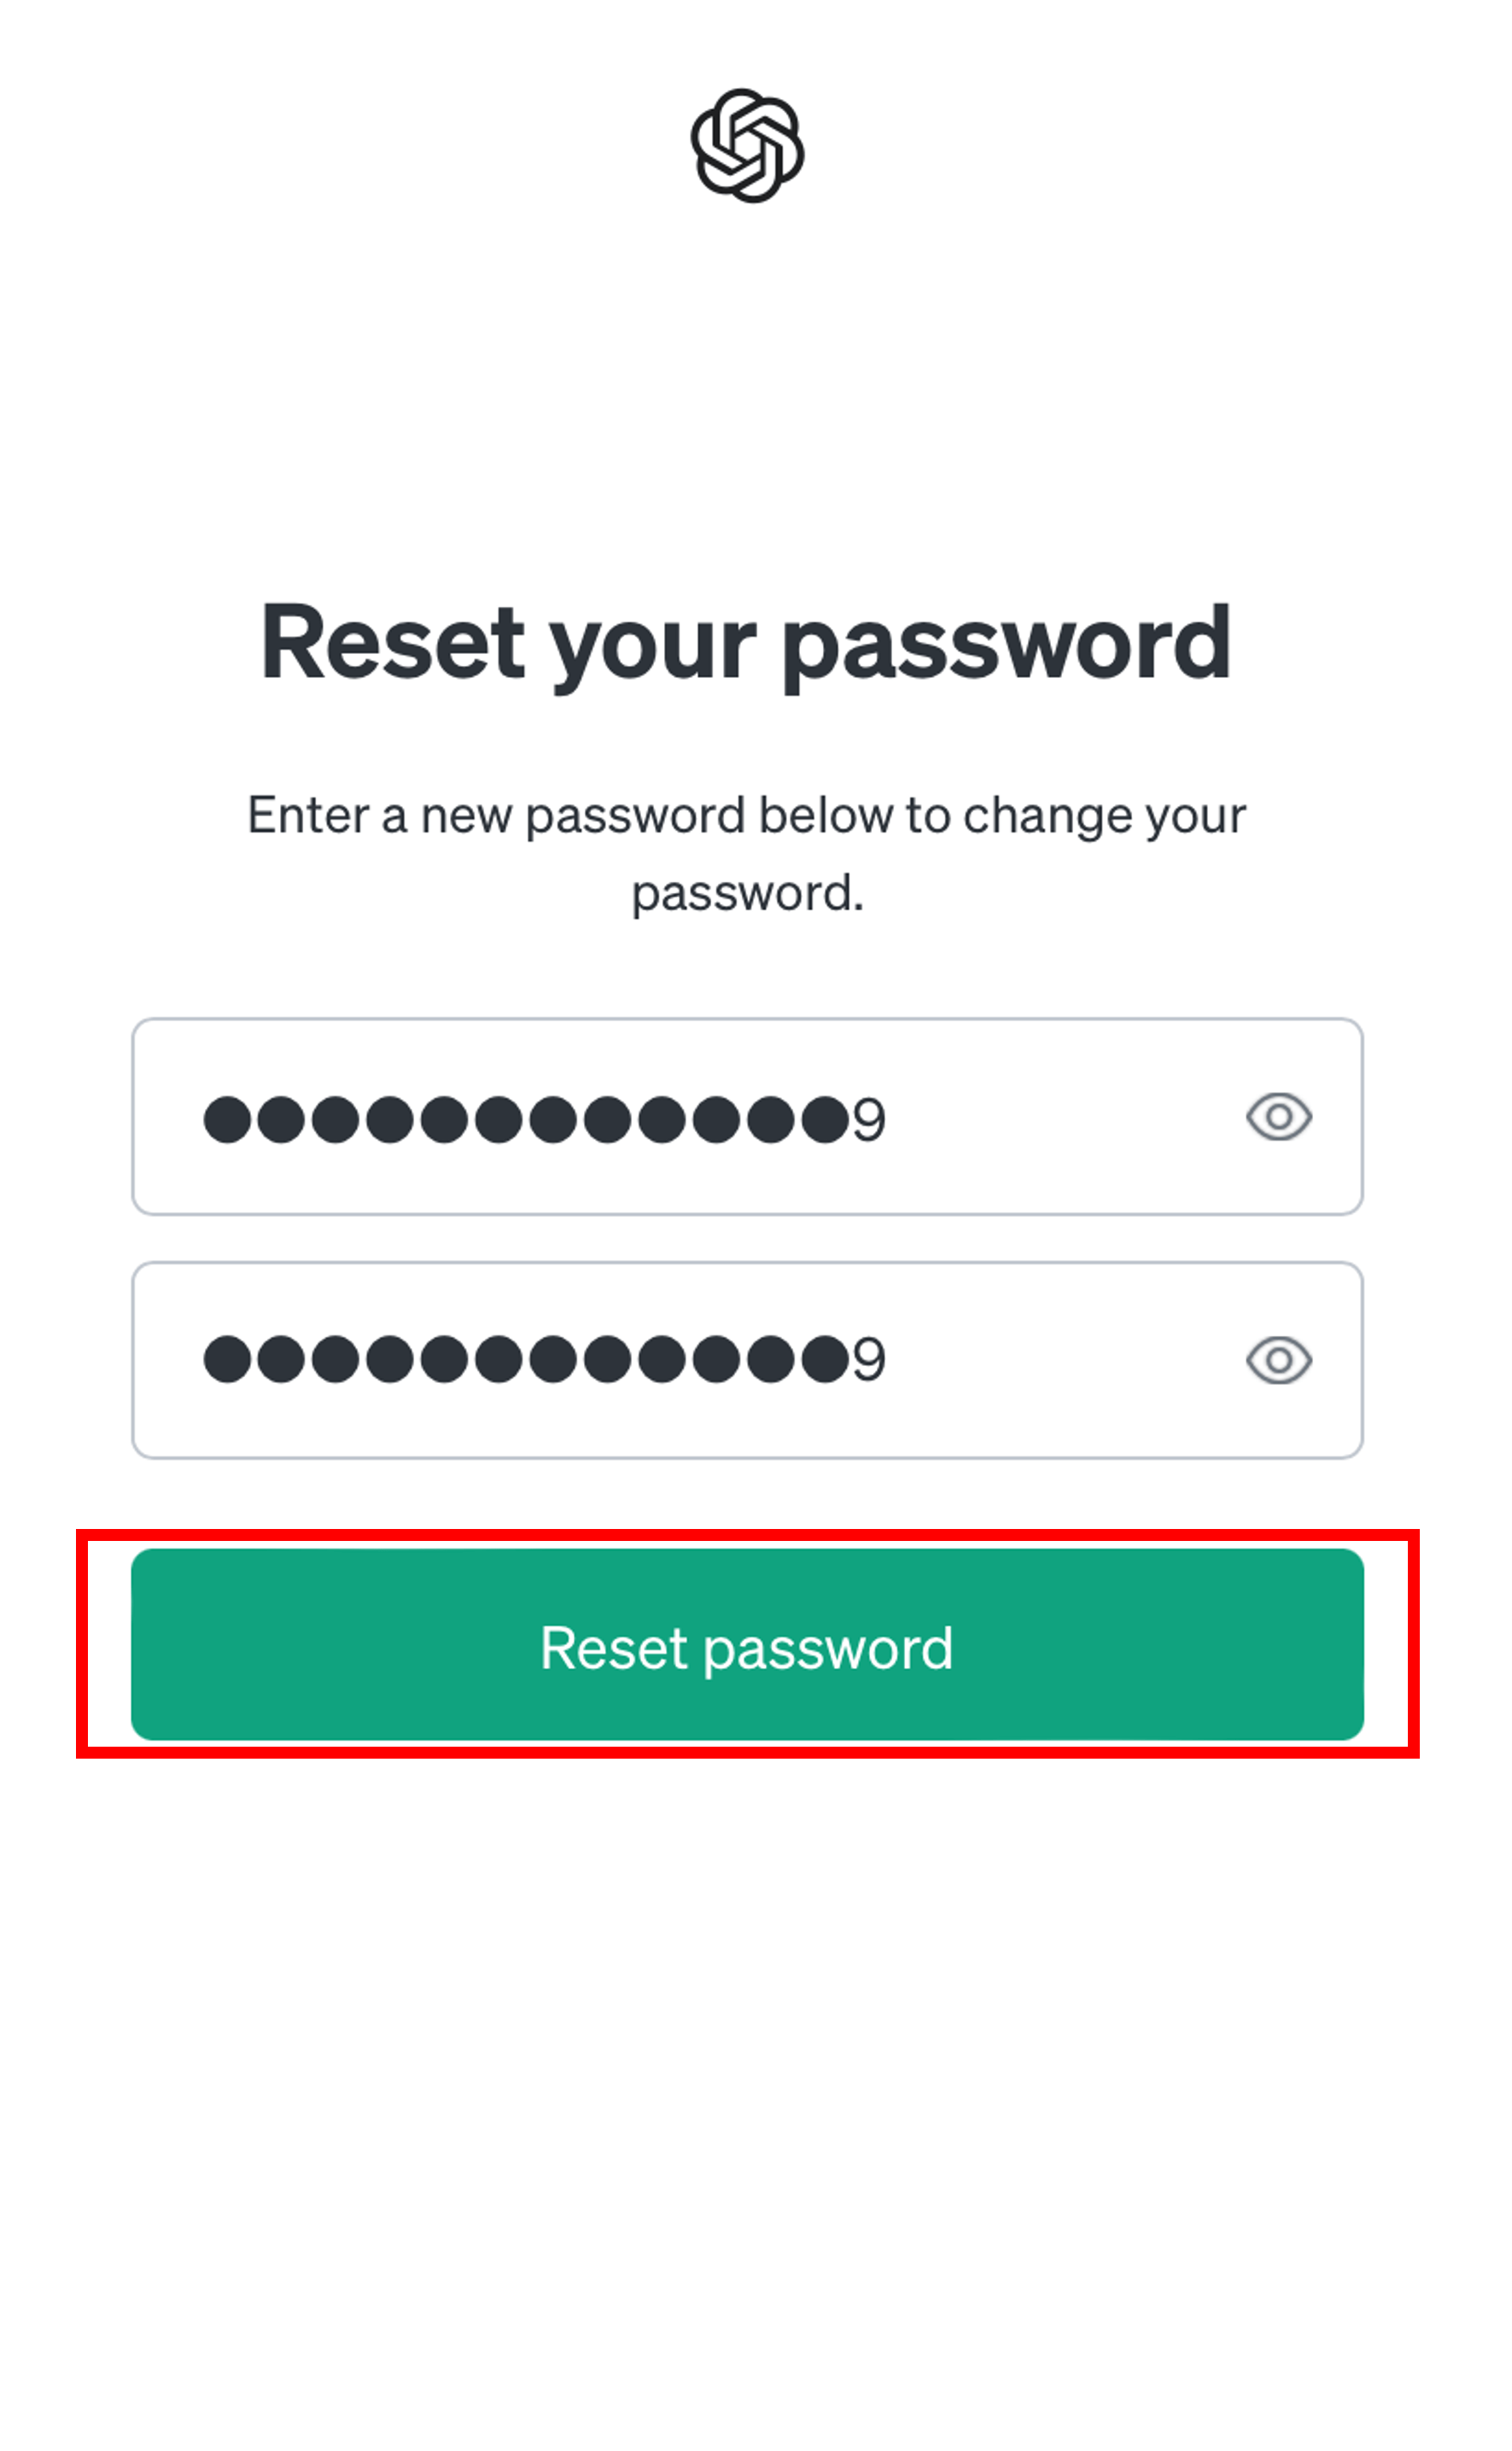 パスワードを2回入力してReset passwordのボタンをタップする場面のスクリーンショット